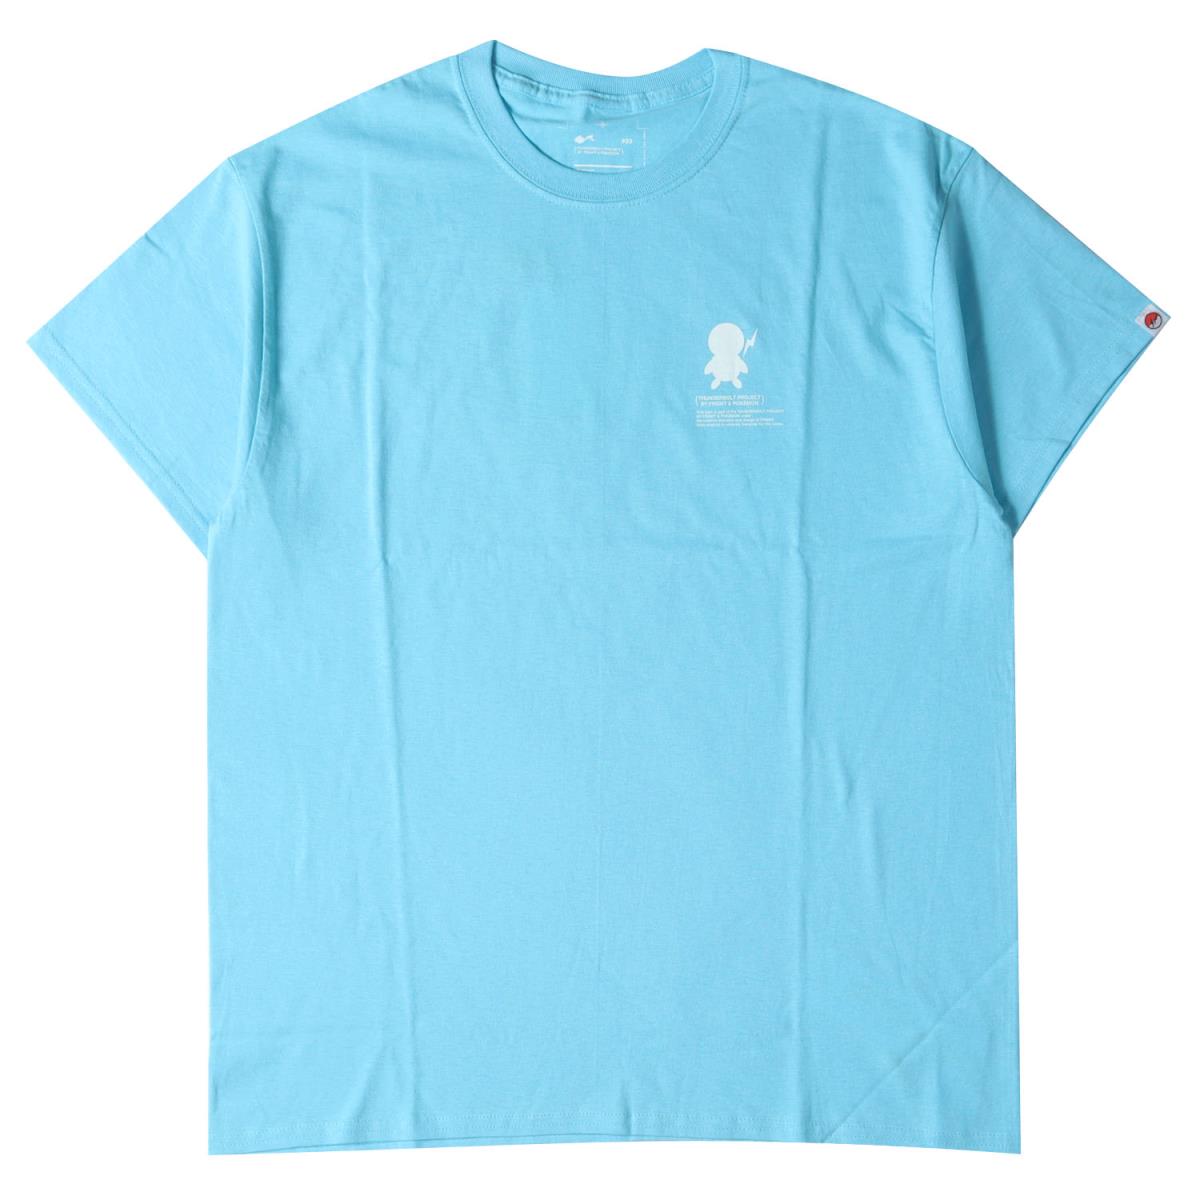 トップス, Tシャツ・カットソー fragment THUNDERBOLT PROJECT T 21SS 03(L) K3243